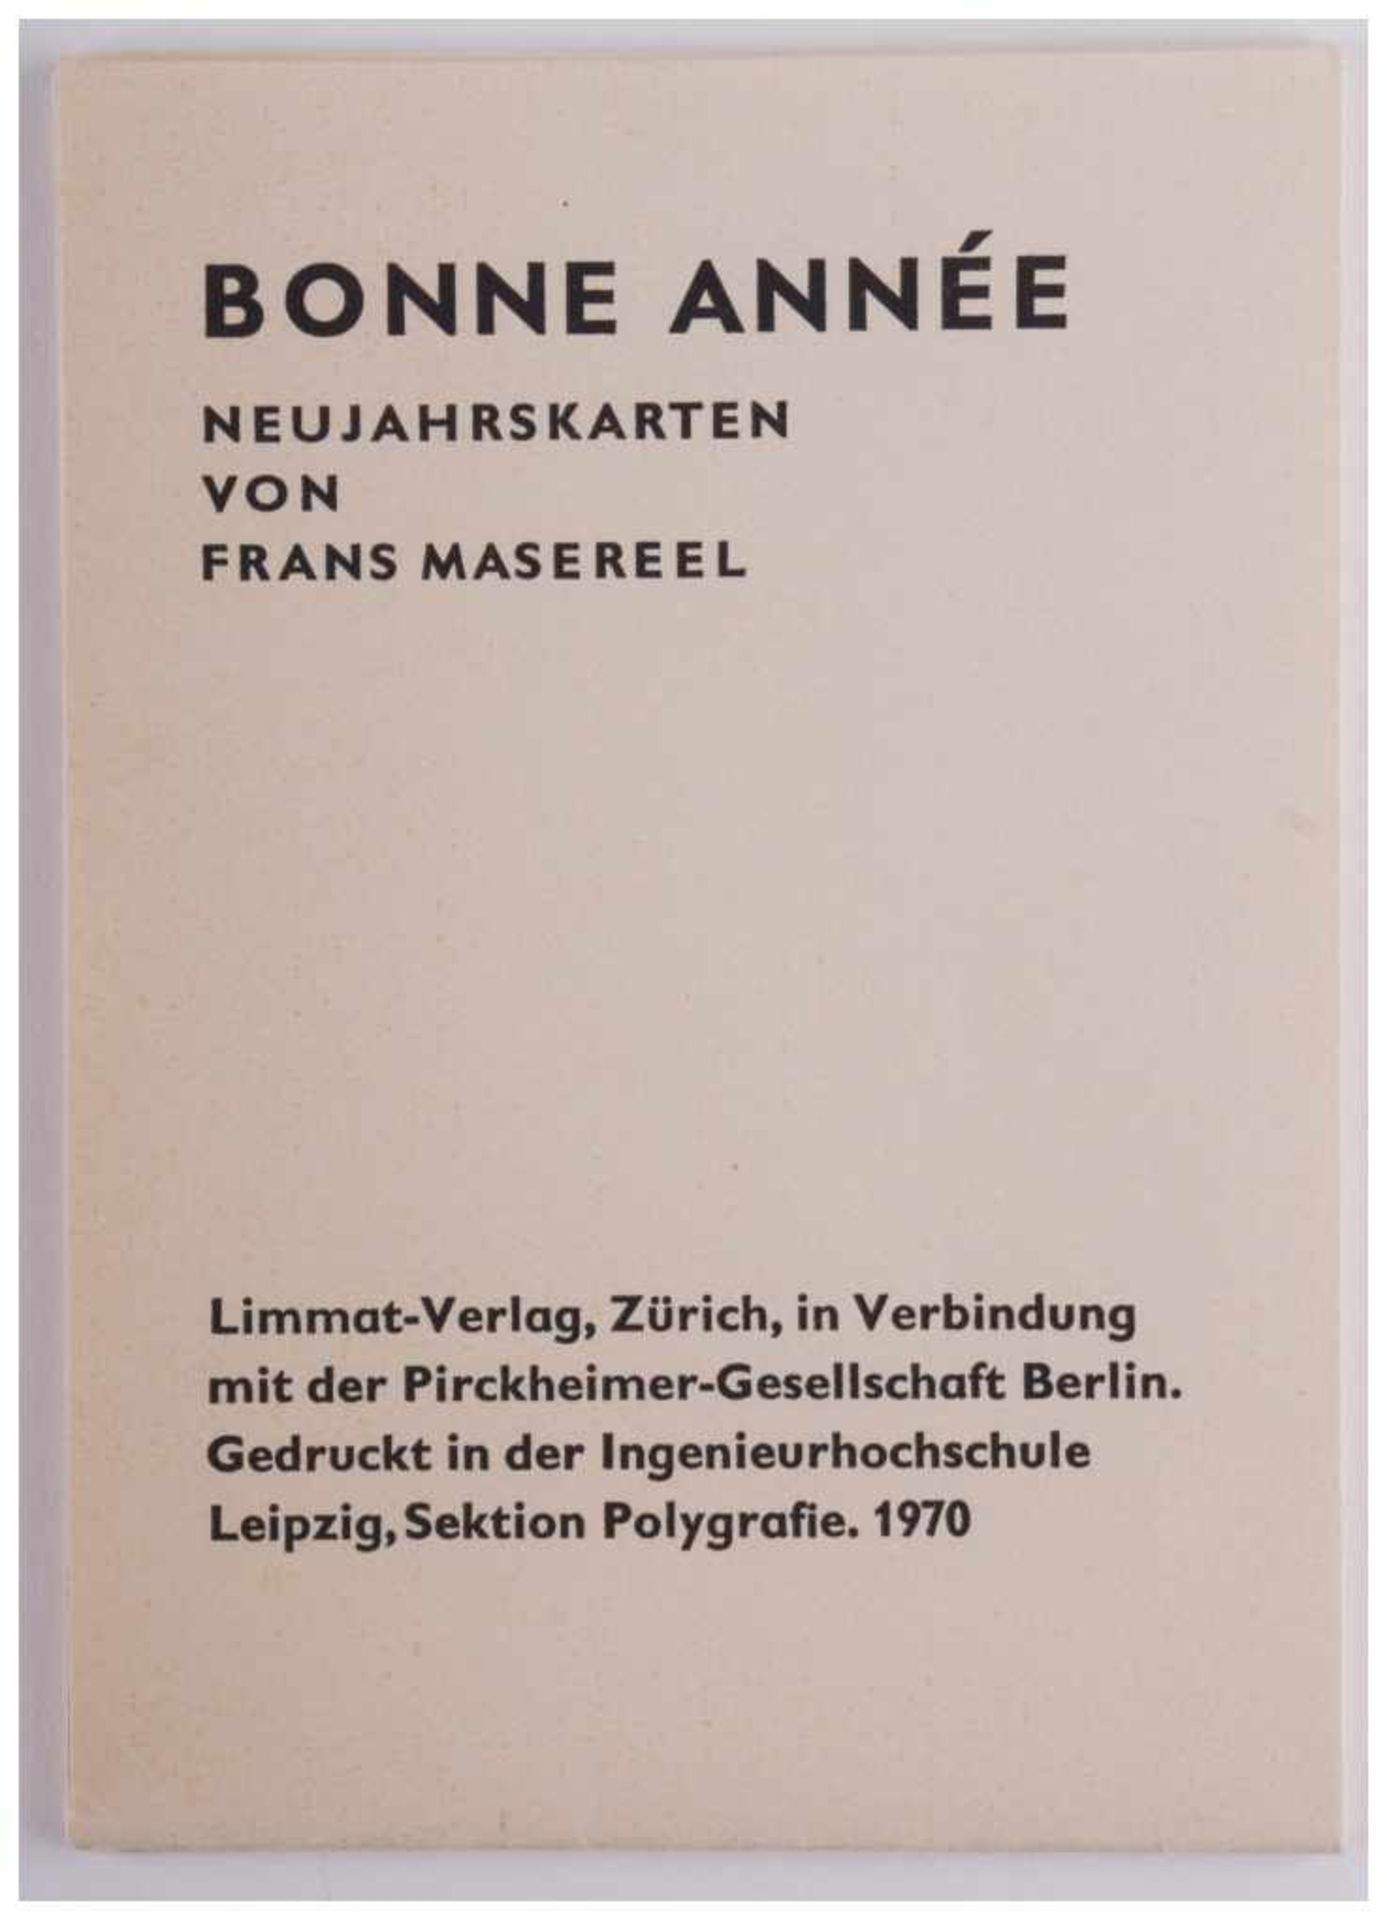 Bonne Année - Neujahrskarten von Frans Masereel - "Neujahrsgrüße von 1958-1969" [...] - Image 6 of 6